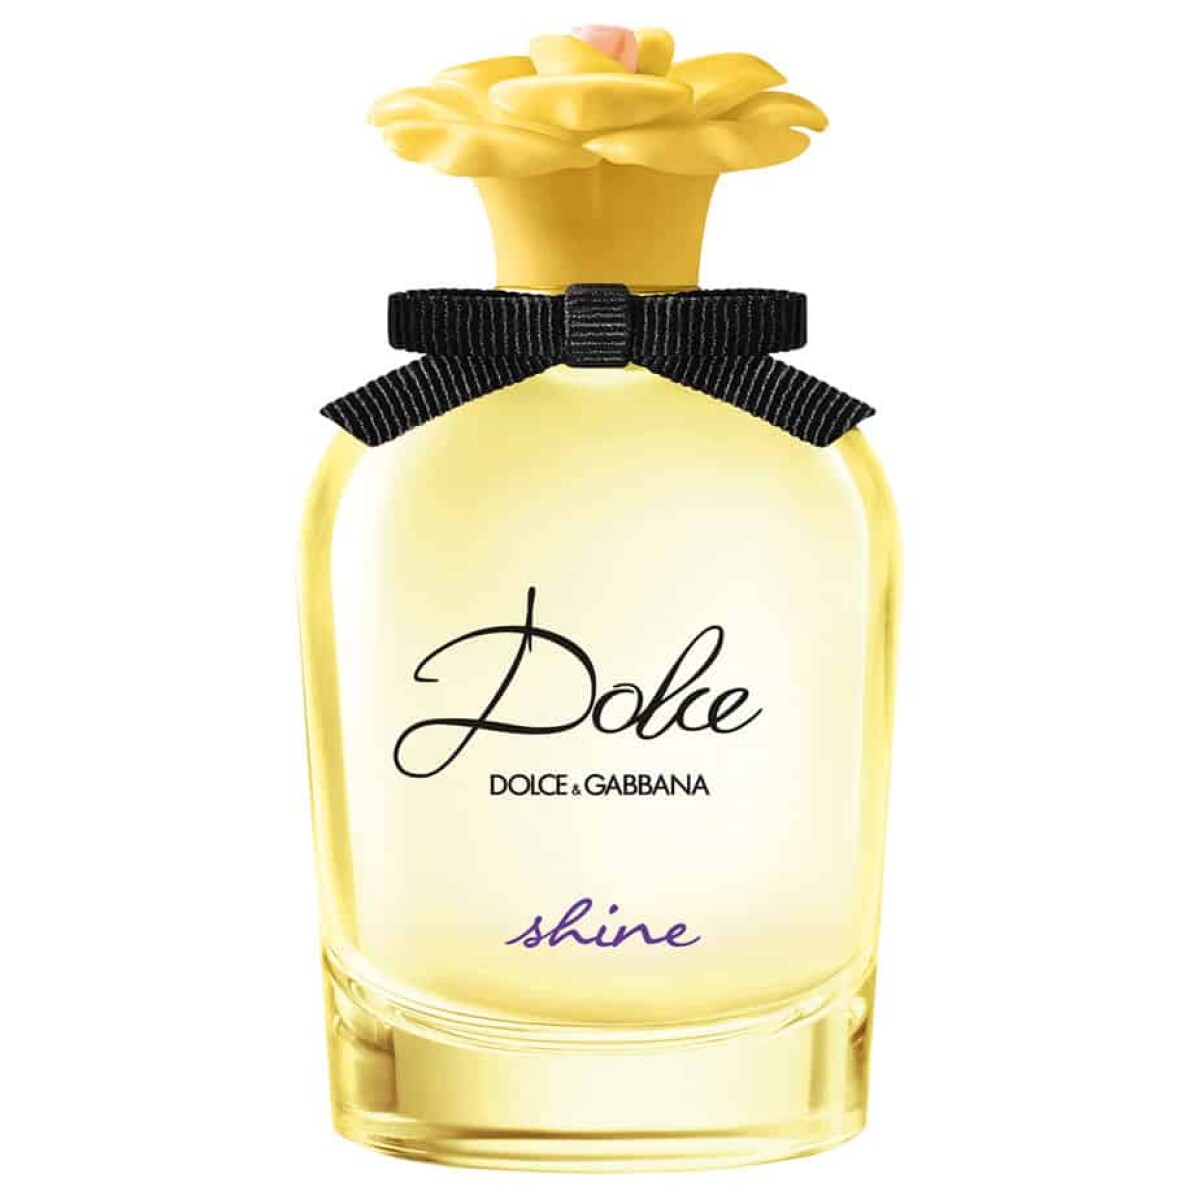 Perfume Dolce & Gabbana Dolce Shine Edp 30 ml 